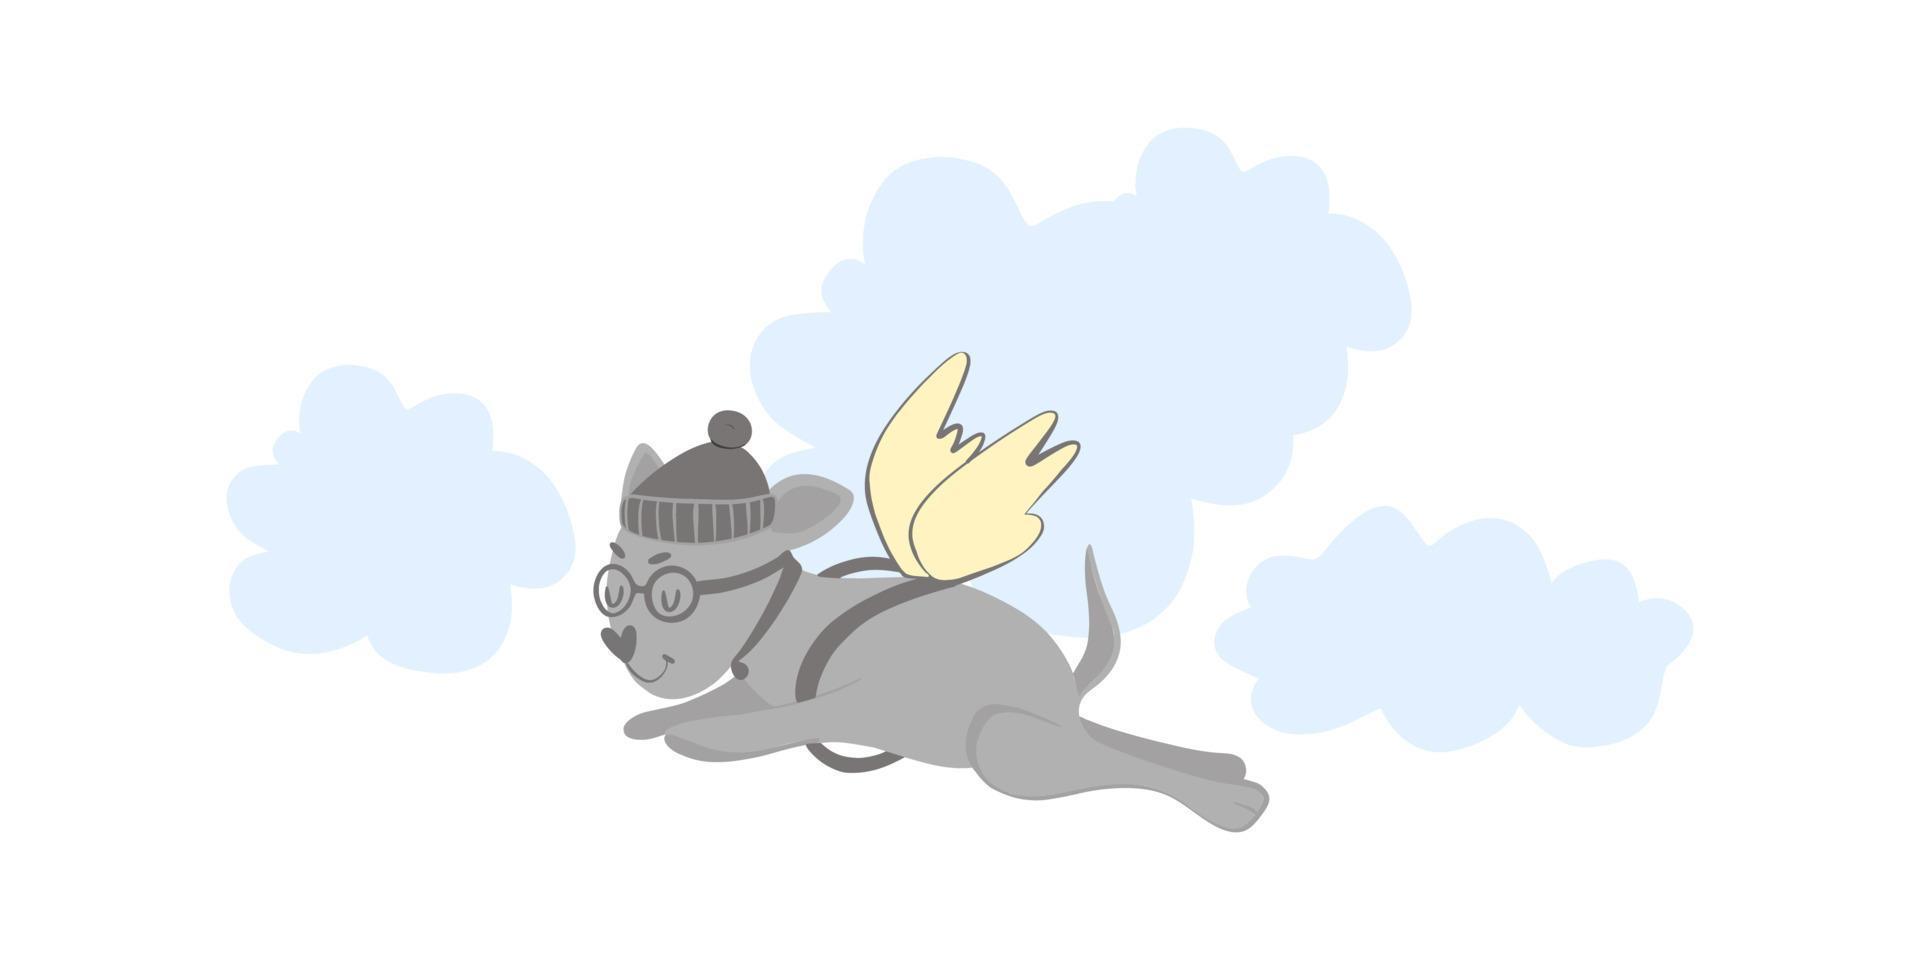 söt hund med vingar, flygande hund i molnen. vektor doodle, tecknad stock illustration handritad, isolerad på vit bakgrund